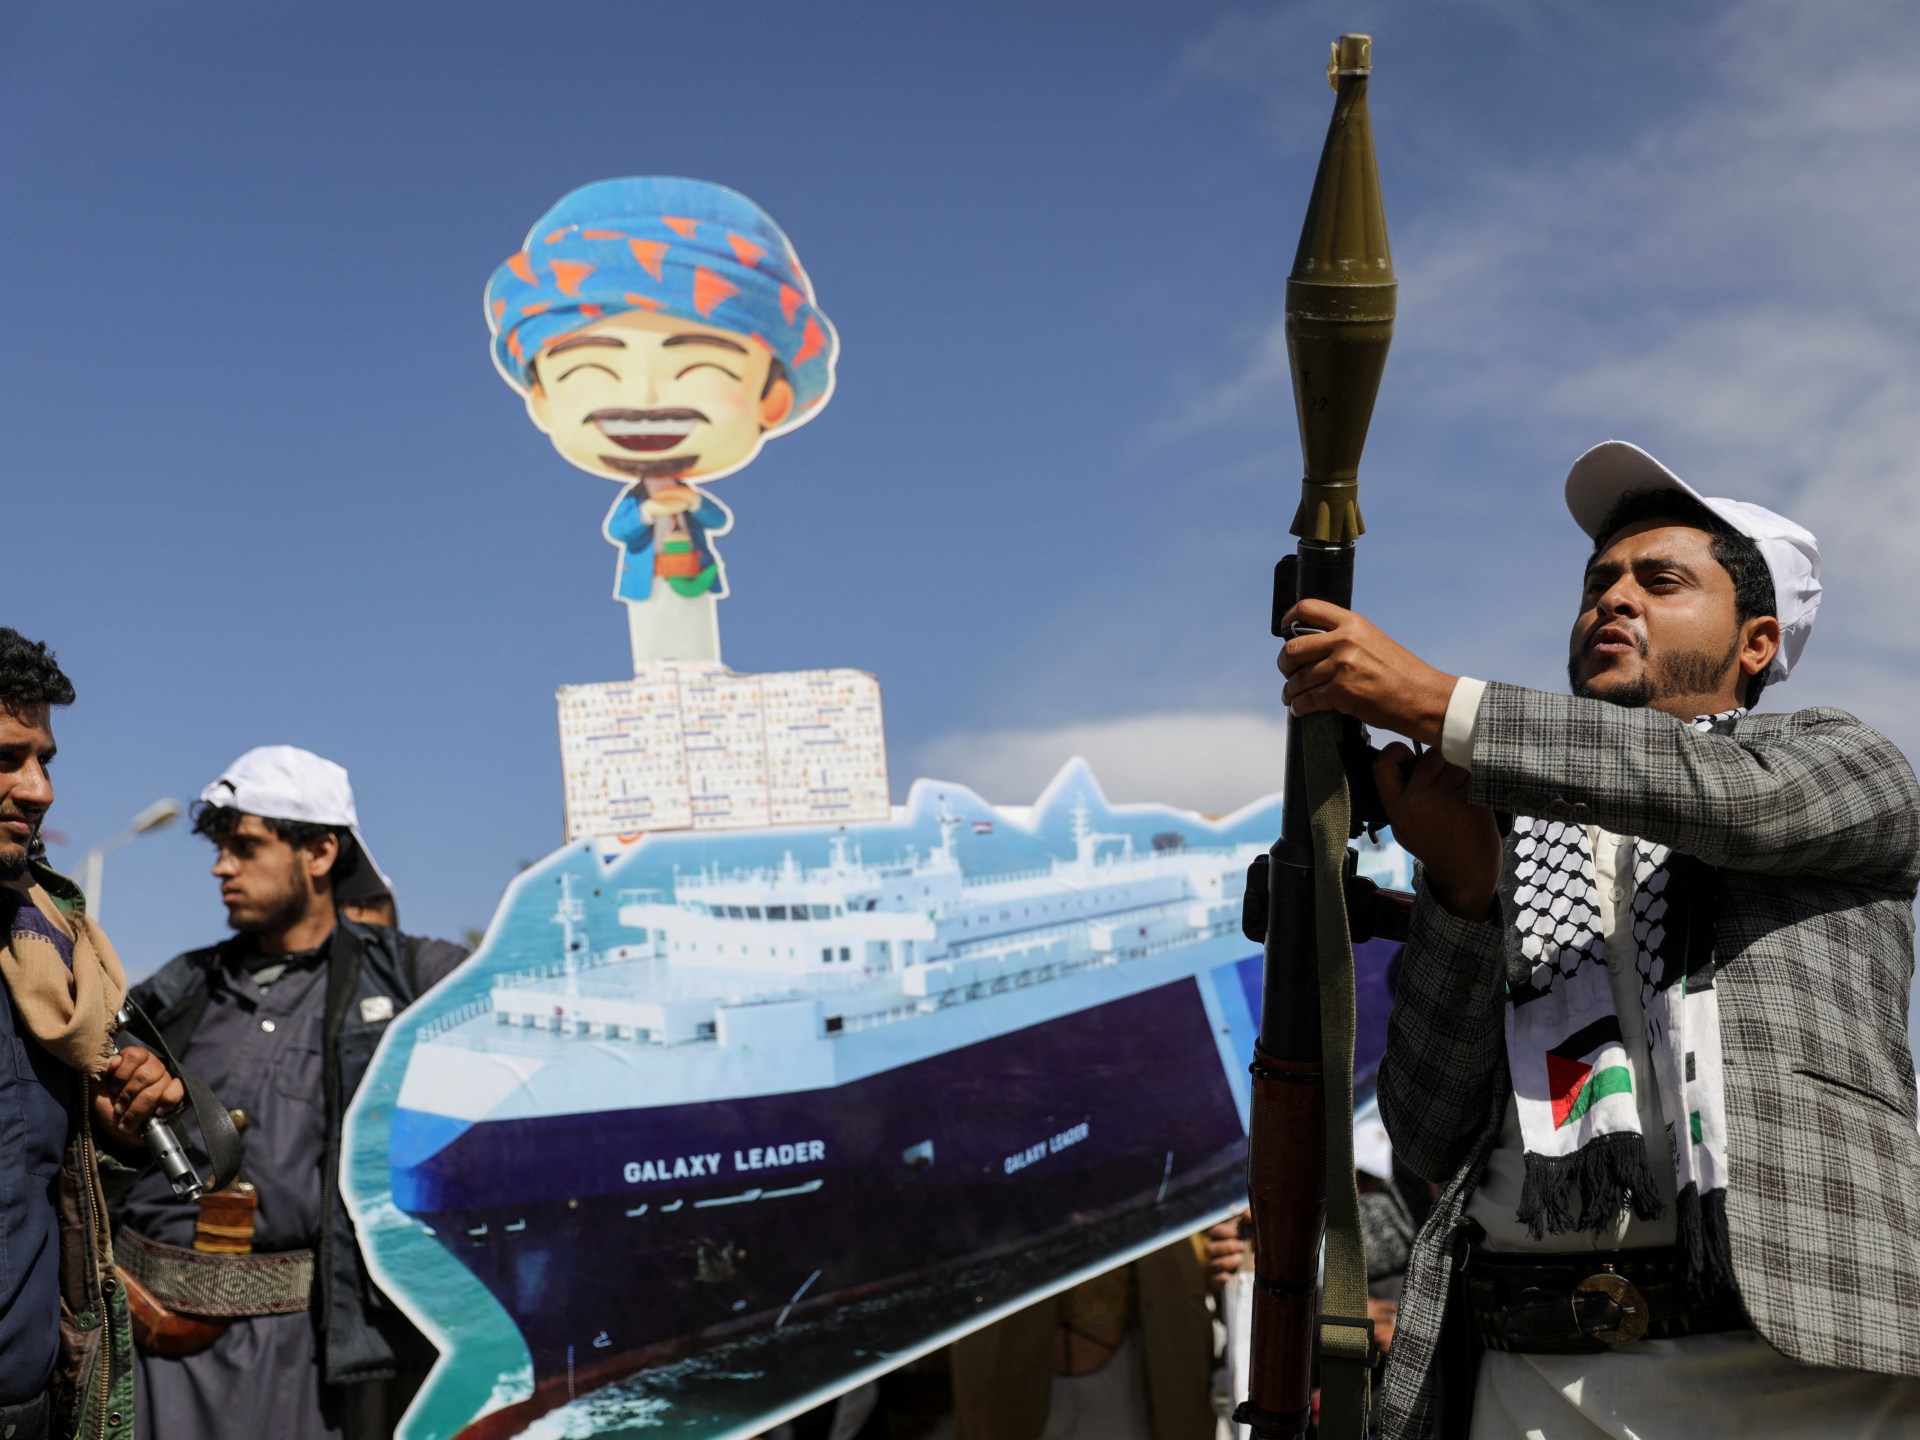 فورين بوليسي: هل تكون الكابلات البحرية الهدف التالي للحوثيين؟ | أخبار جولة الصحافة – البوكس نيوز